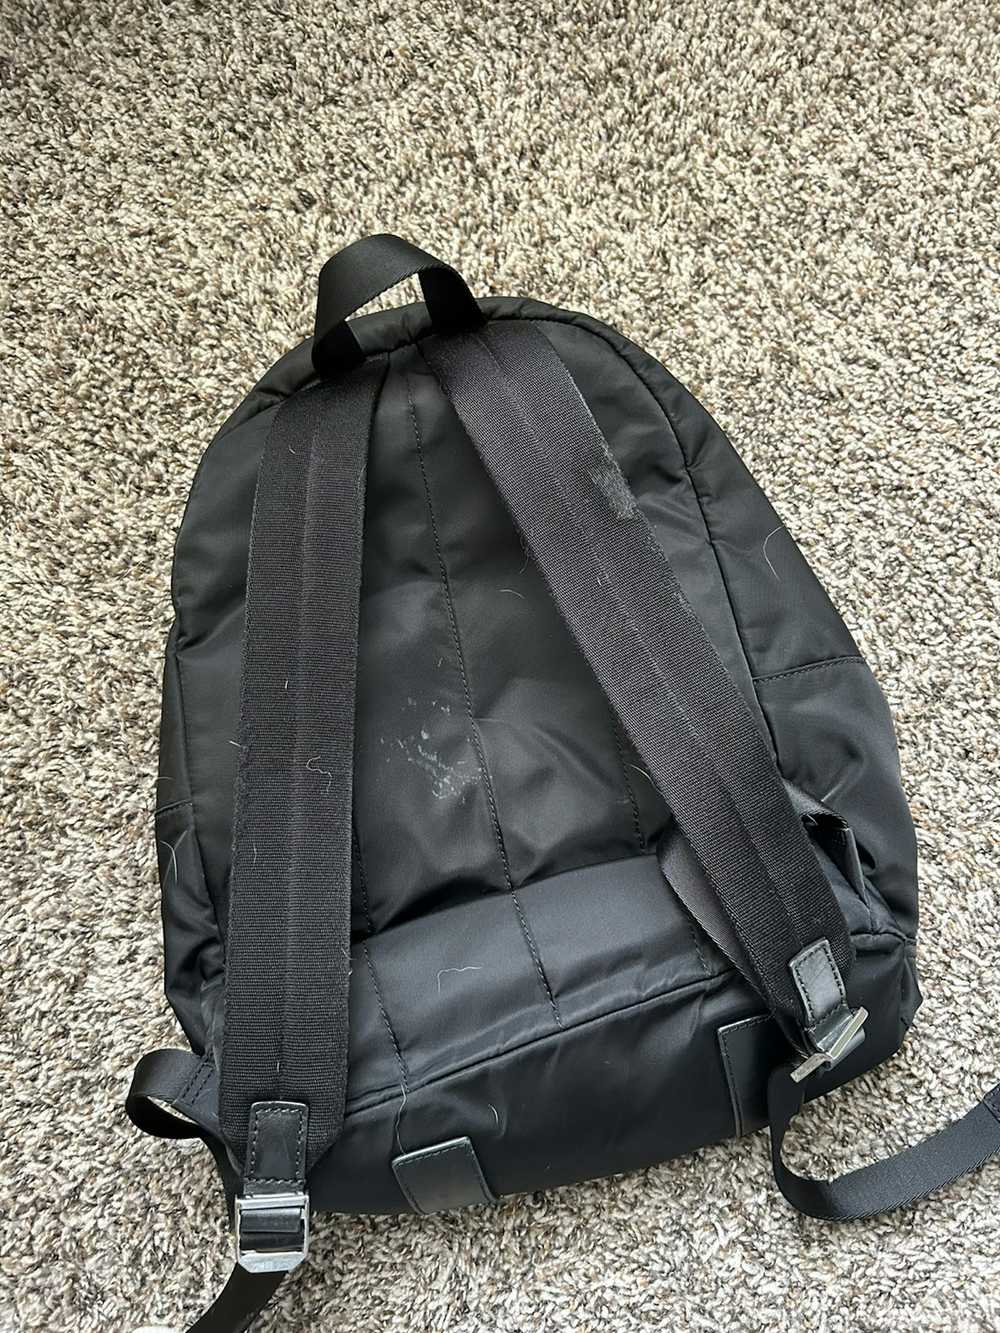 Michael Kors Michael Kors Nylon Backpack (Unisex) - image 4